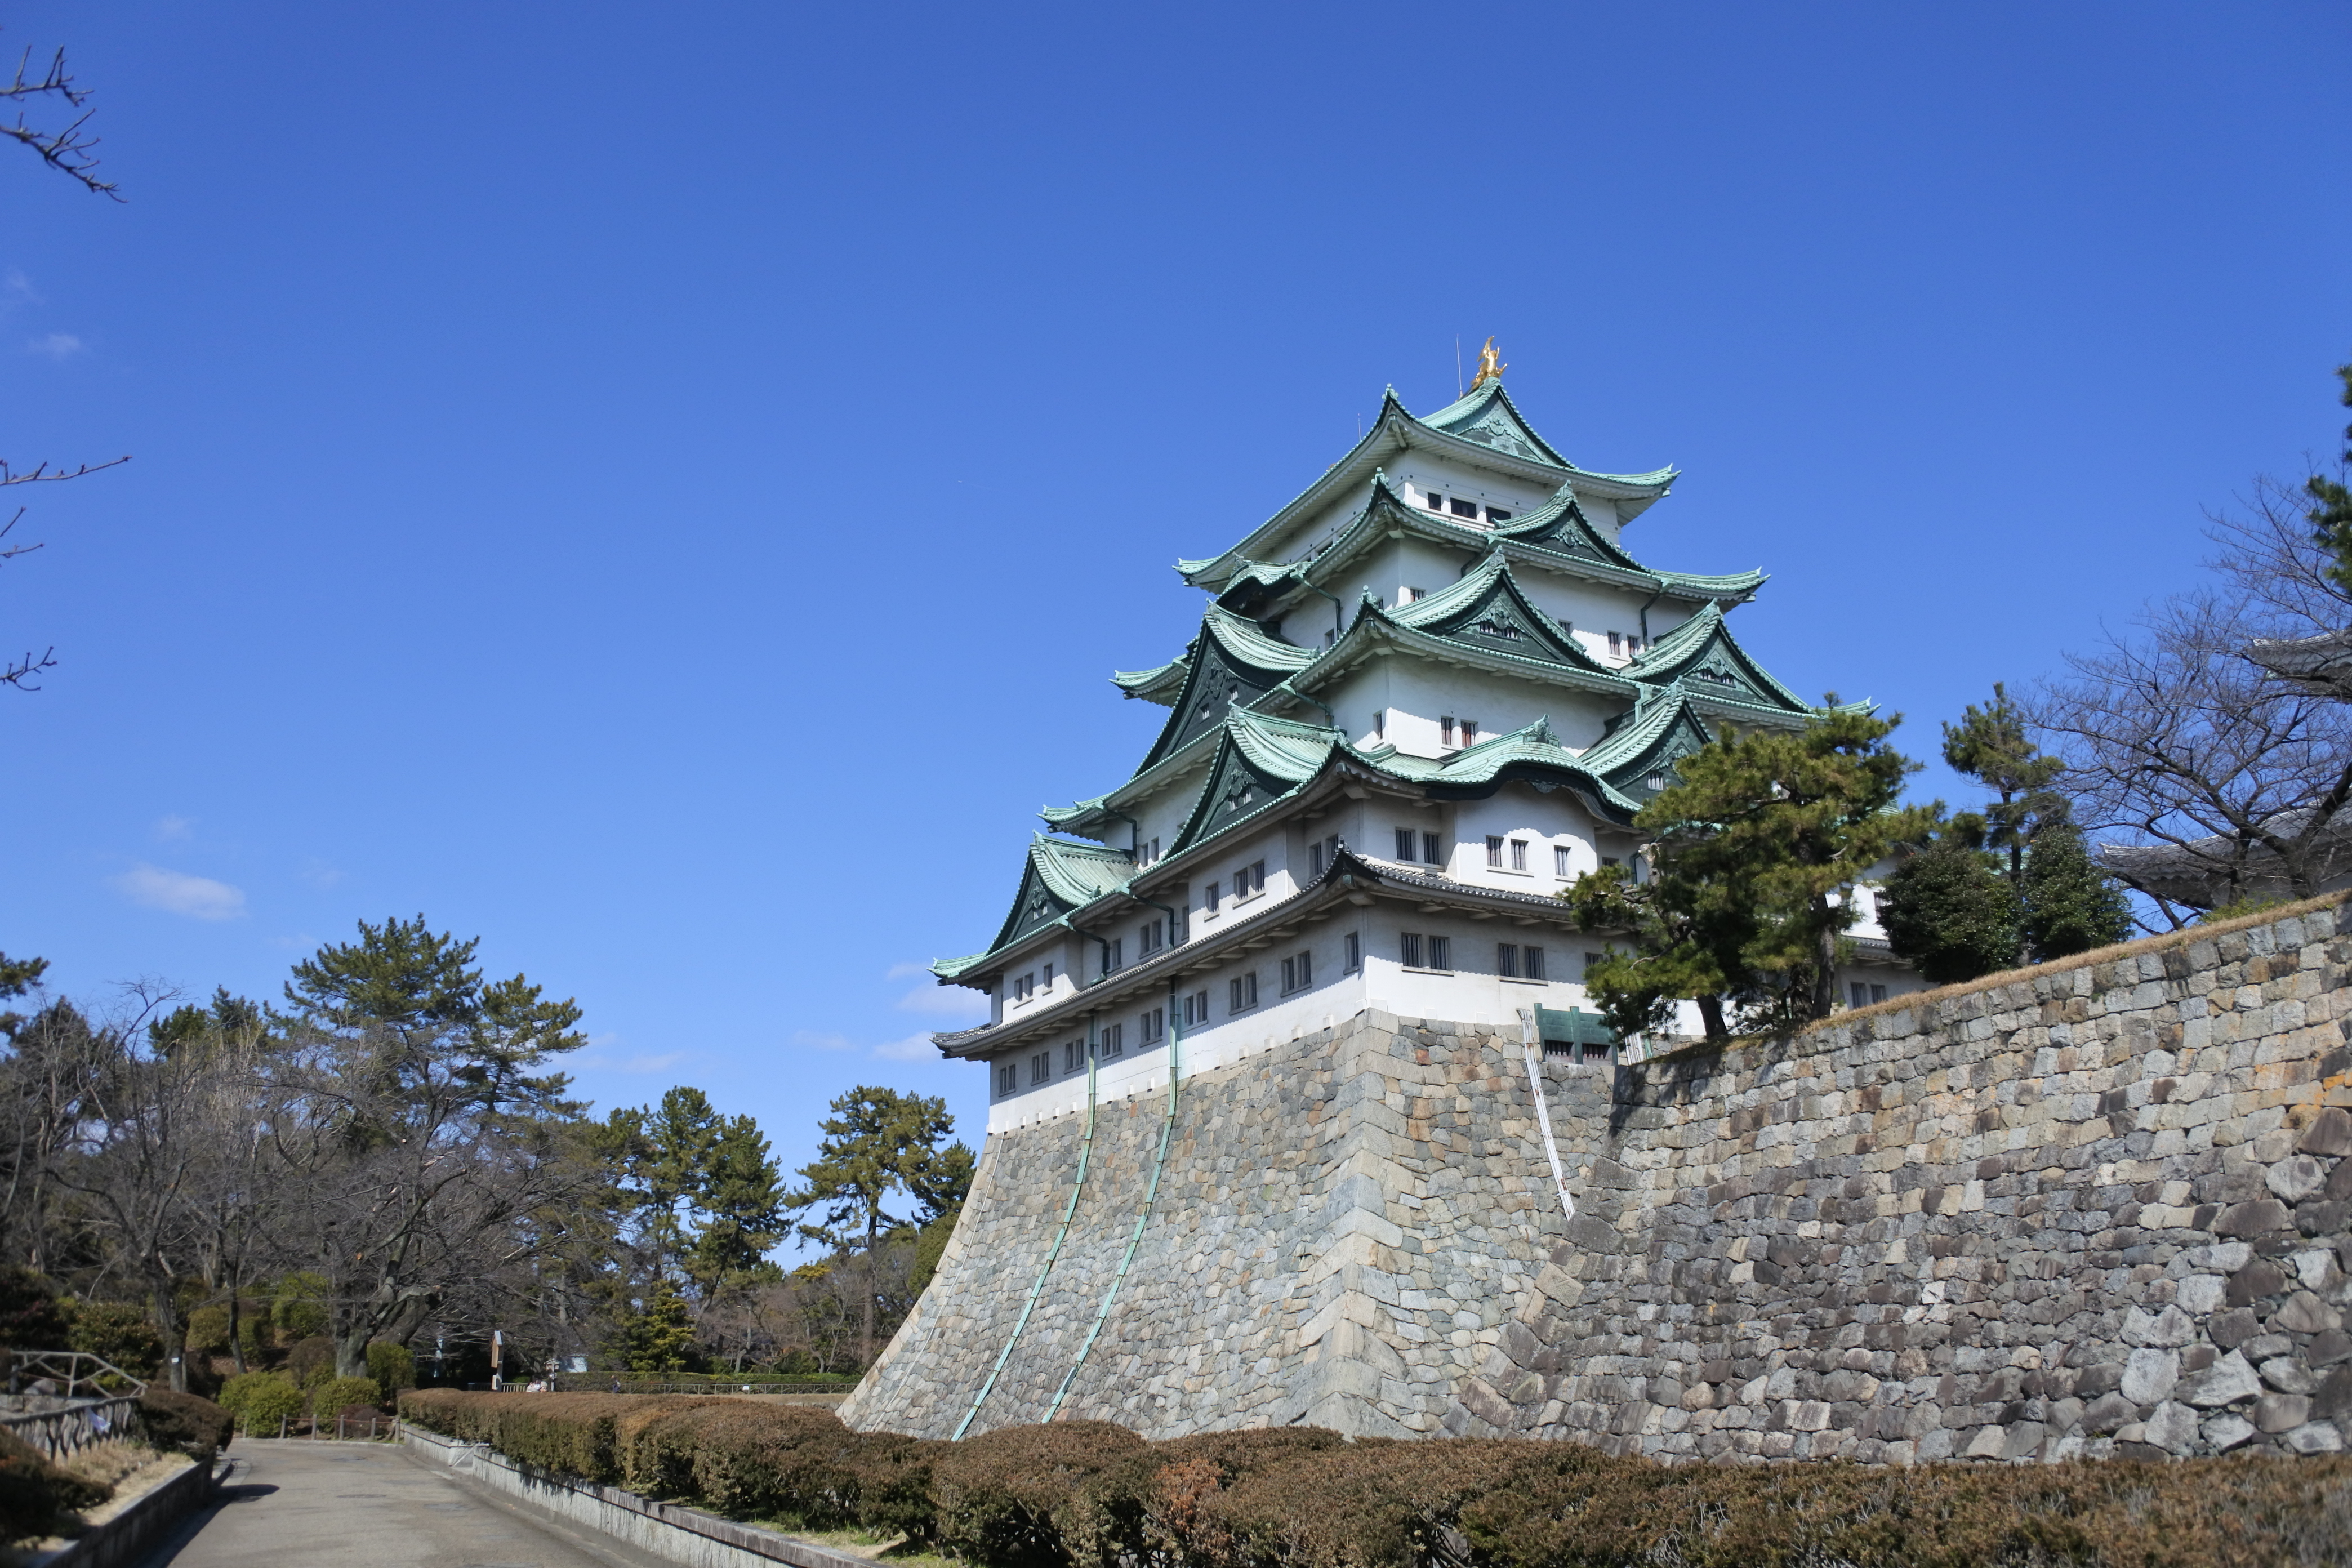 歴史に興味がなくても楽しめる！鹿にグルメに、名古屋城の見所満載ガイド - 6d9f039a3ff24ecb8e5359ffdcd50209